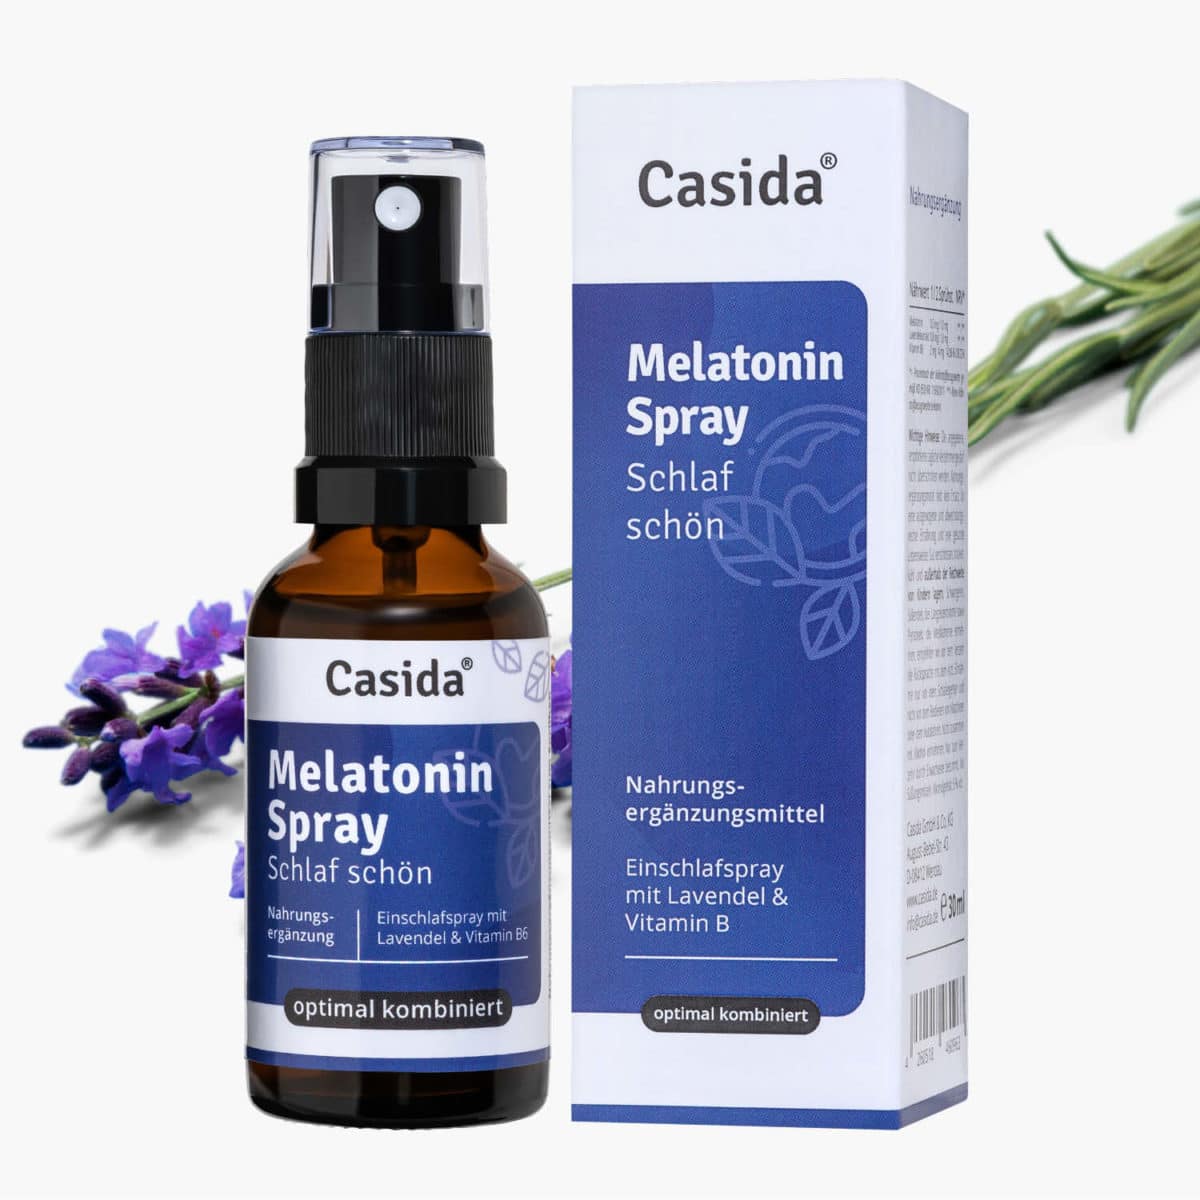 Casida Melatonin Spray Schlaf schön - 30 ml 17203782 Apotheke Guter Schlaf Gute Nacht besser schlafen Lavendel Vitamin B2 B6